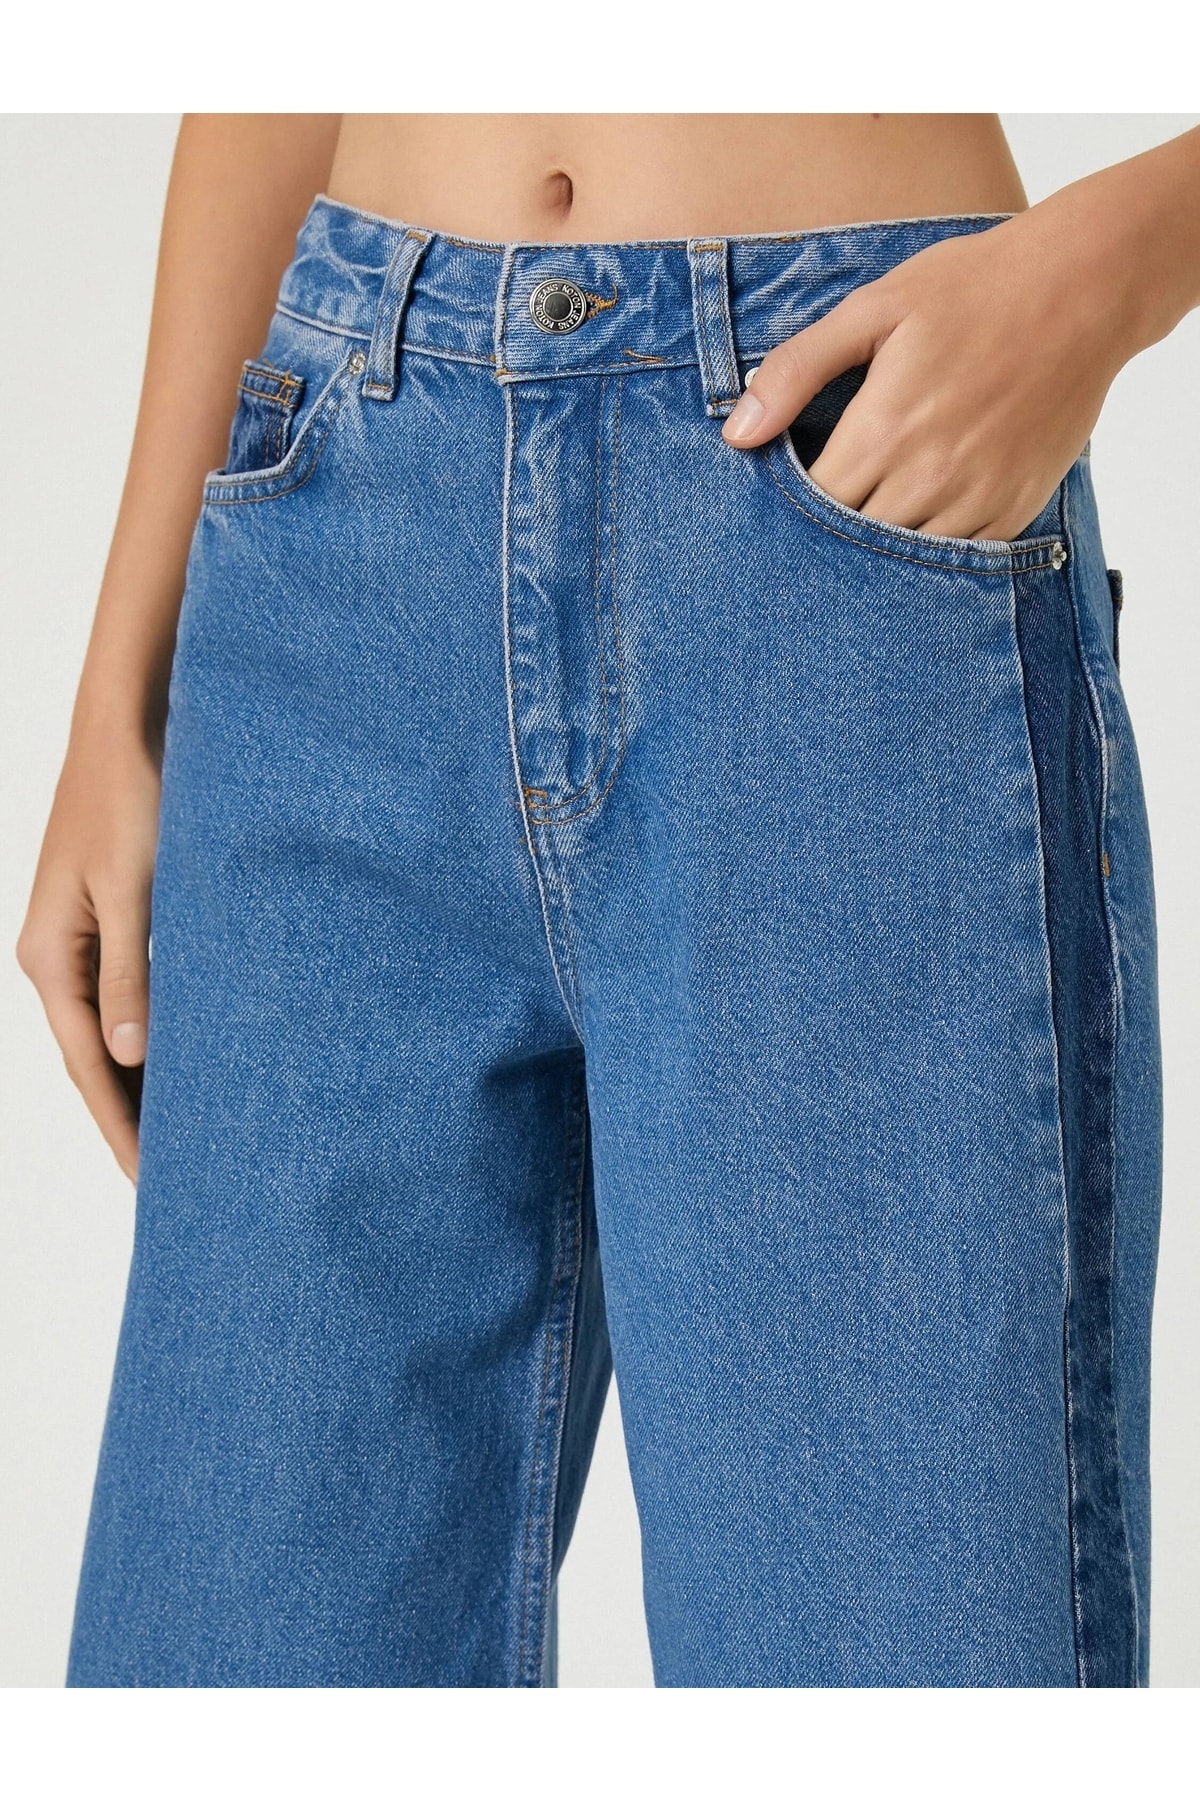 Женские джинсовые брюки среднего цвета индиго Koton, синий цена и фото